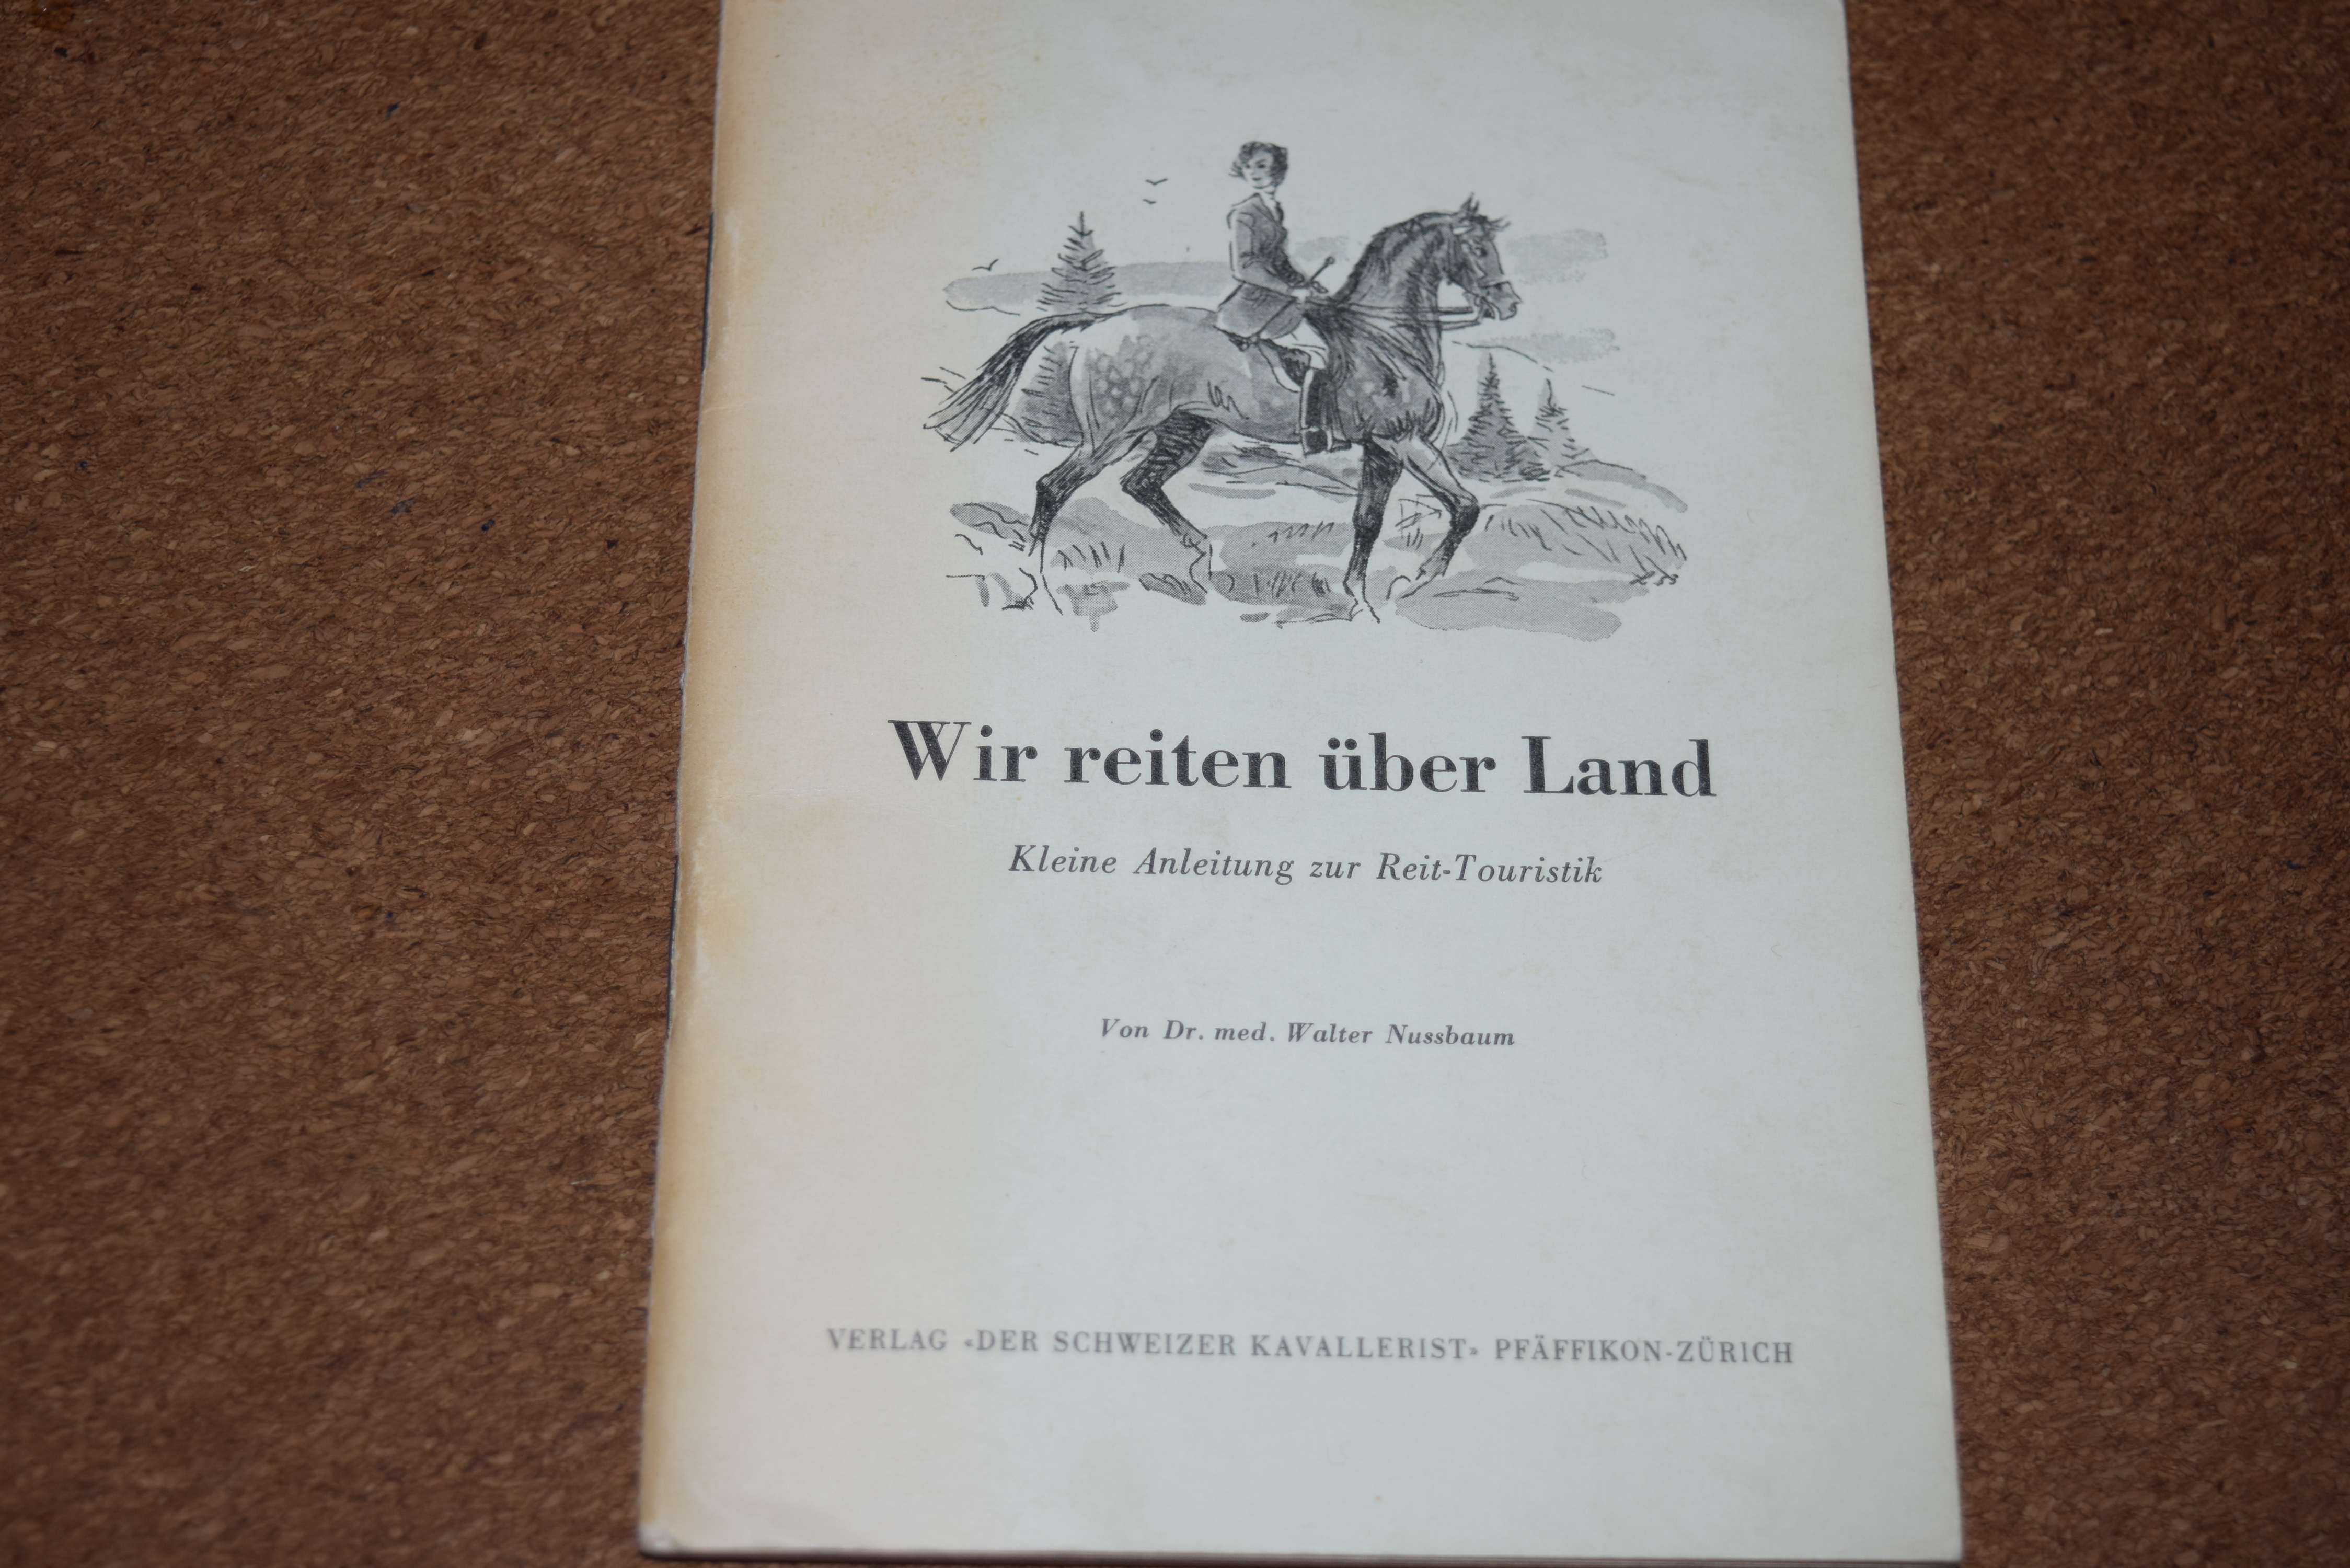 Buchempfehlung "Wir reiten über Land" von Dr. Walter Nussbaum